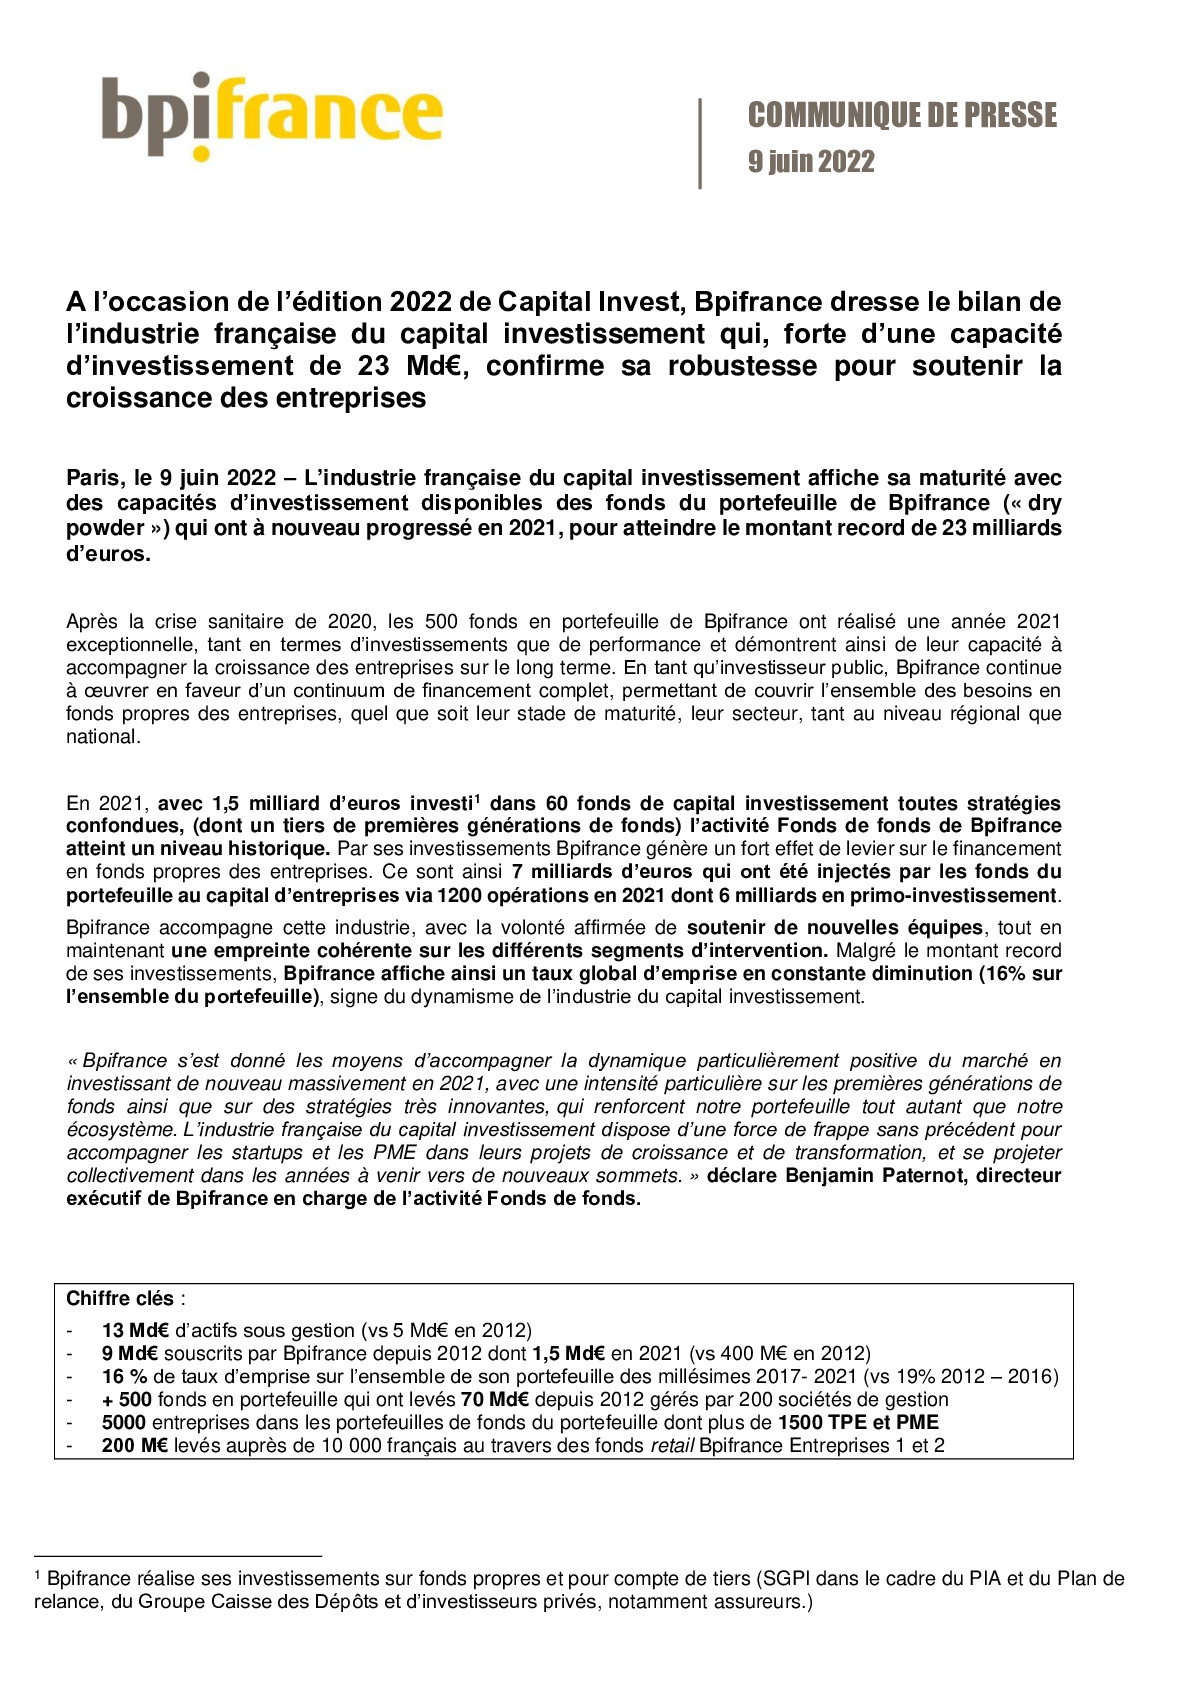 2022 06 09 – CP Bpifrance – Bilan de lindustrie du capital investissement francaise-pdf